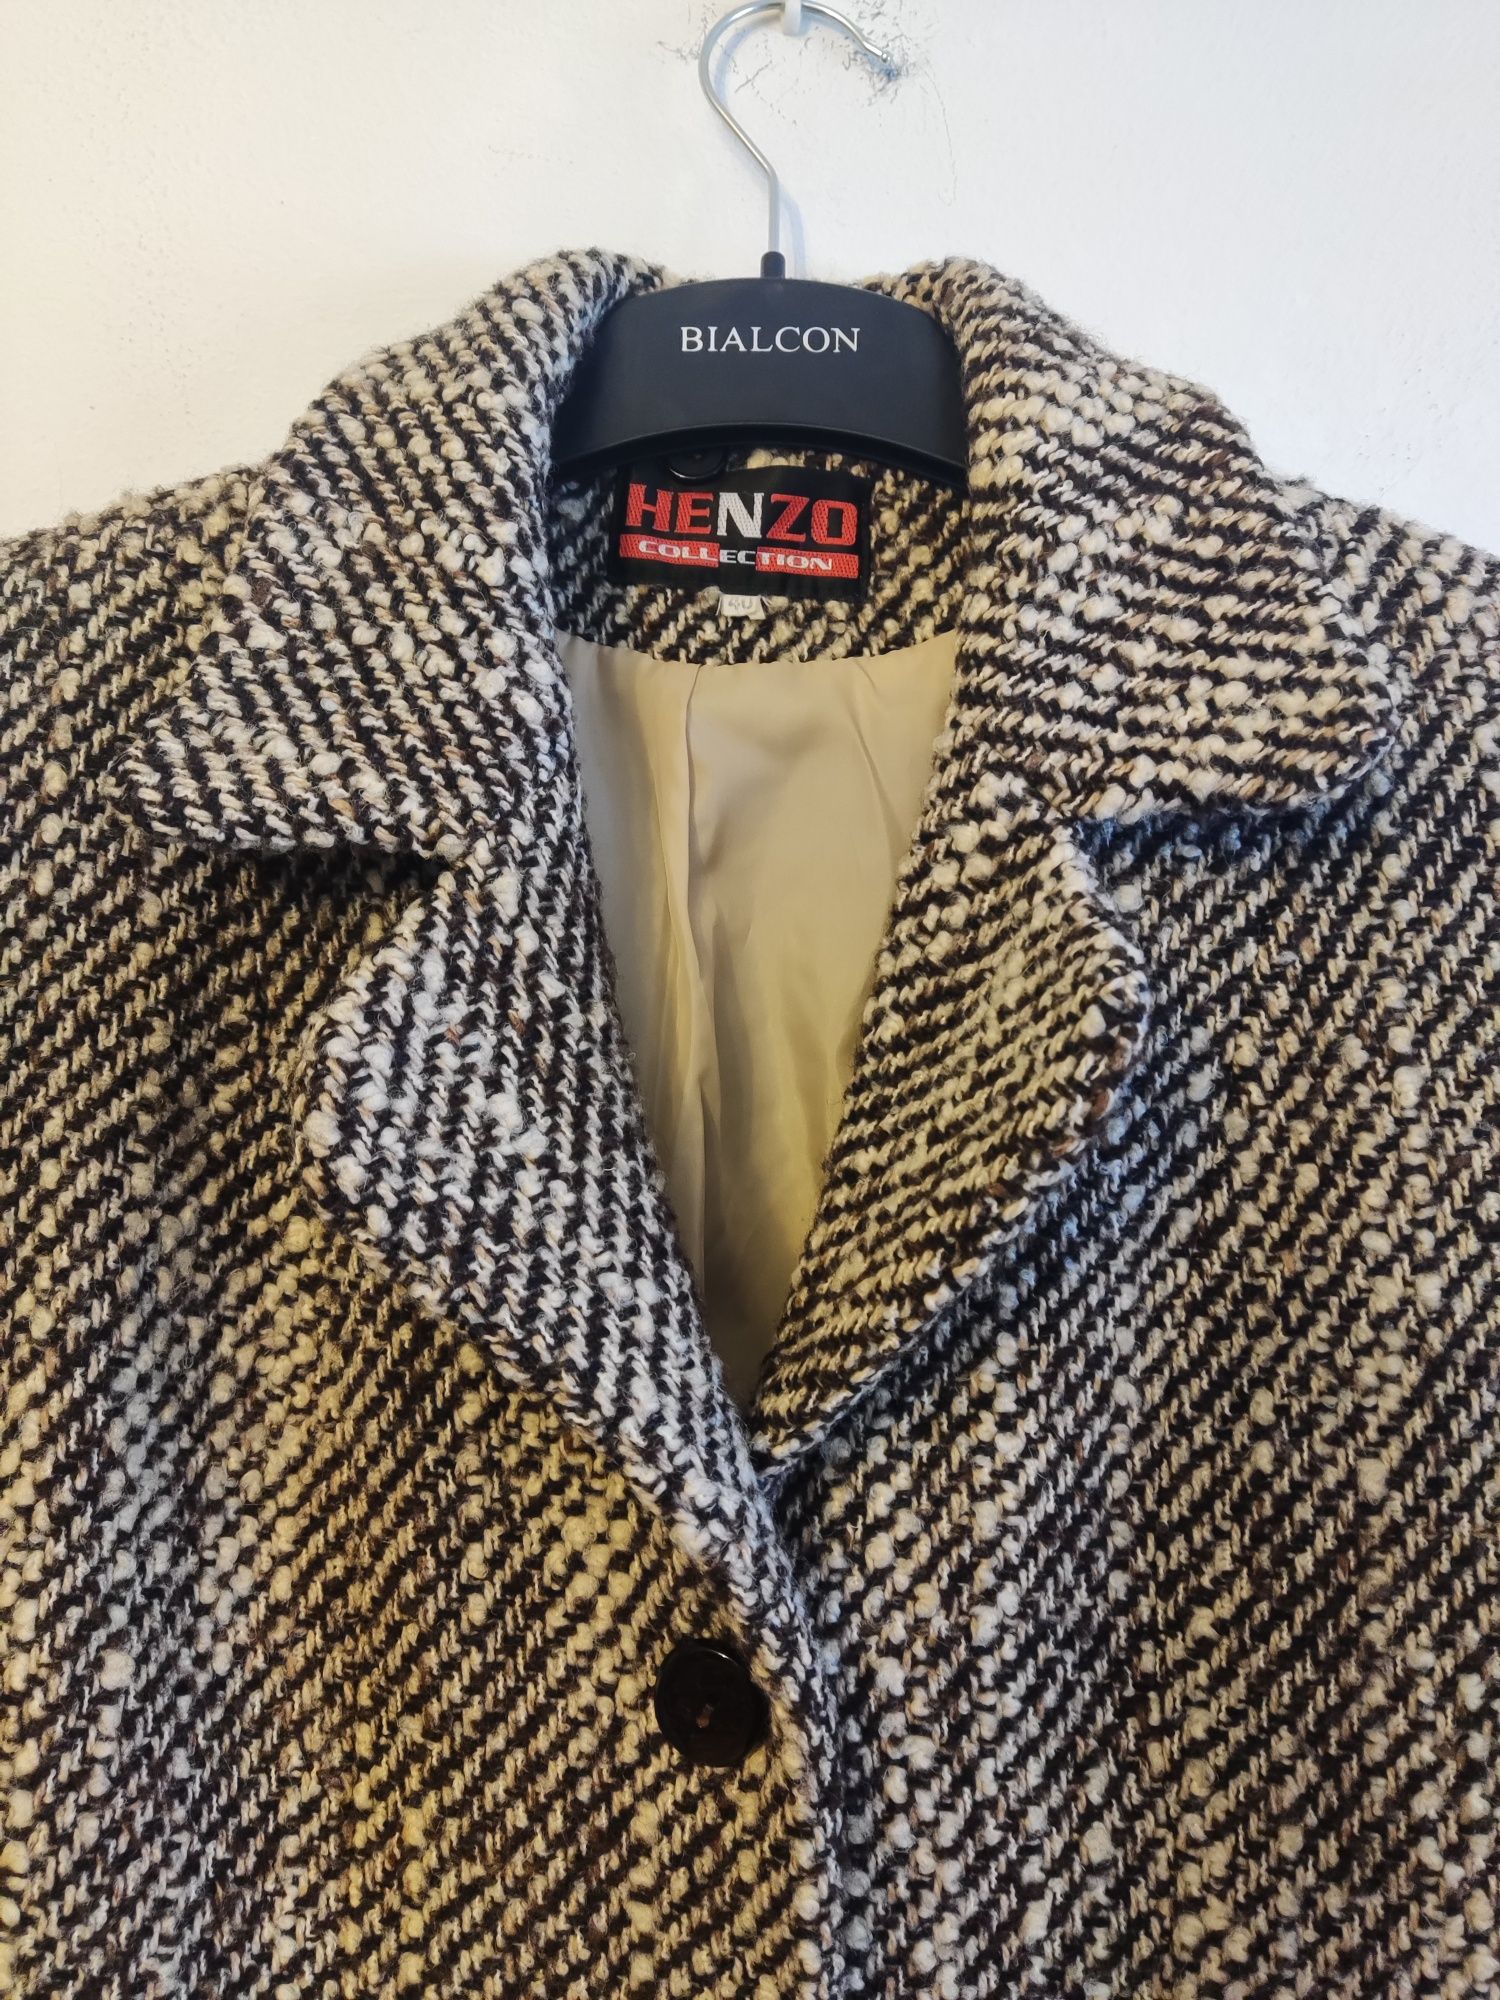 Wełniany płaszcz, jesionka - r. 40 - vintage